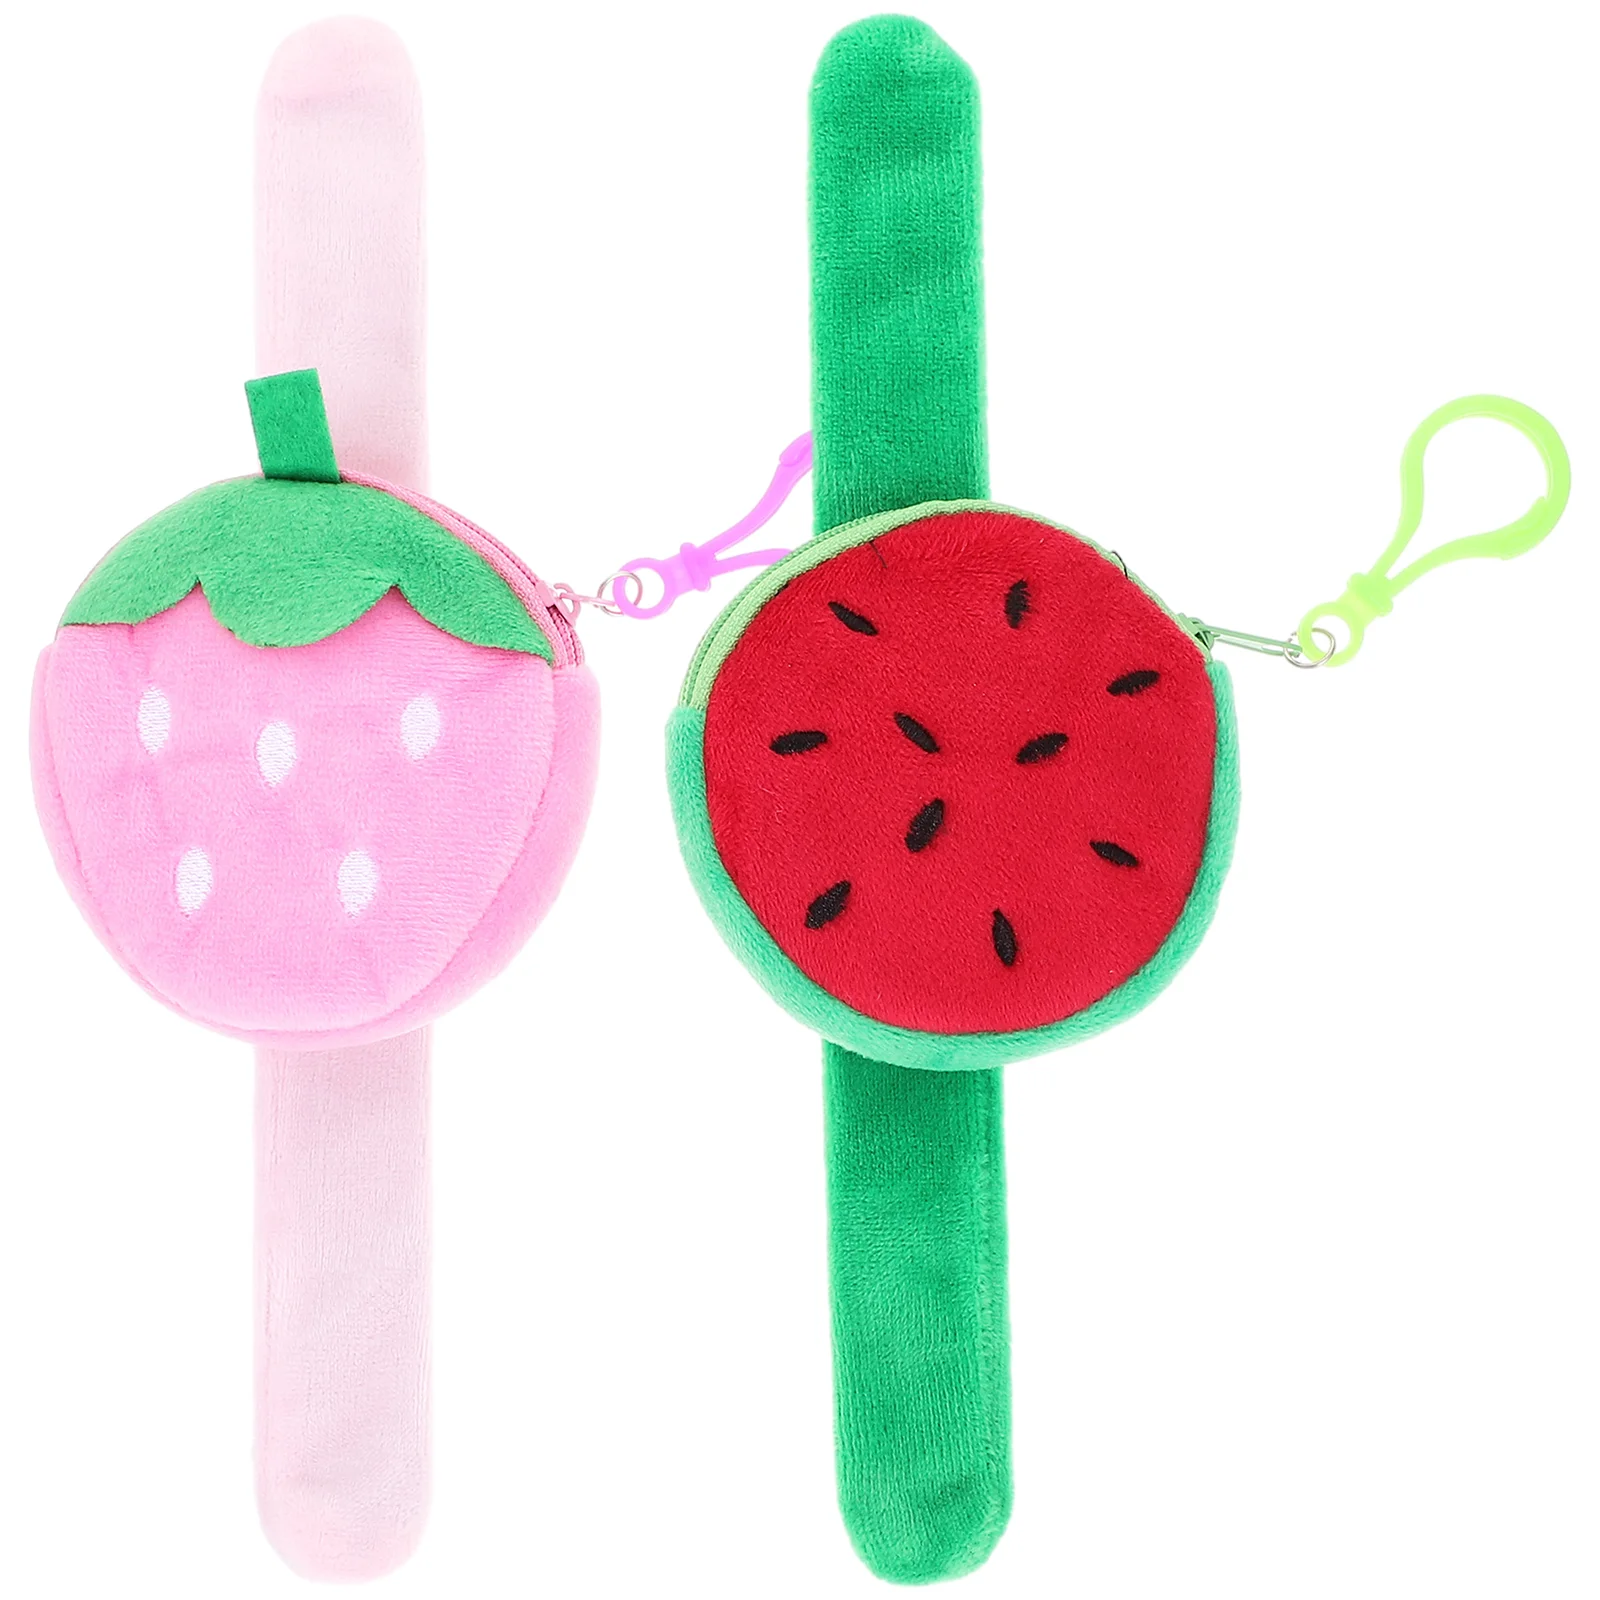 

2 Pcs Watermelon Slap Bracelets Fruit Cute Aldult Plush Band Pp Cotton Strawberry Child